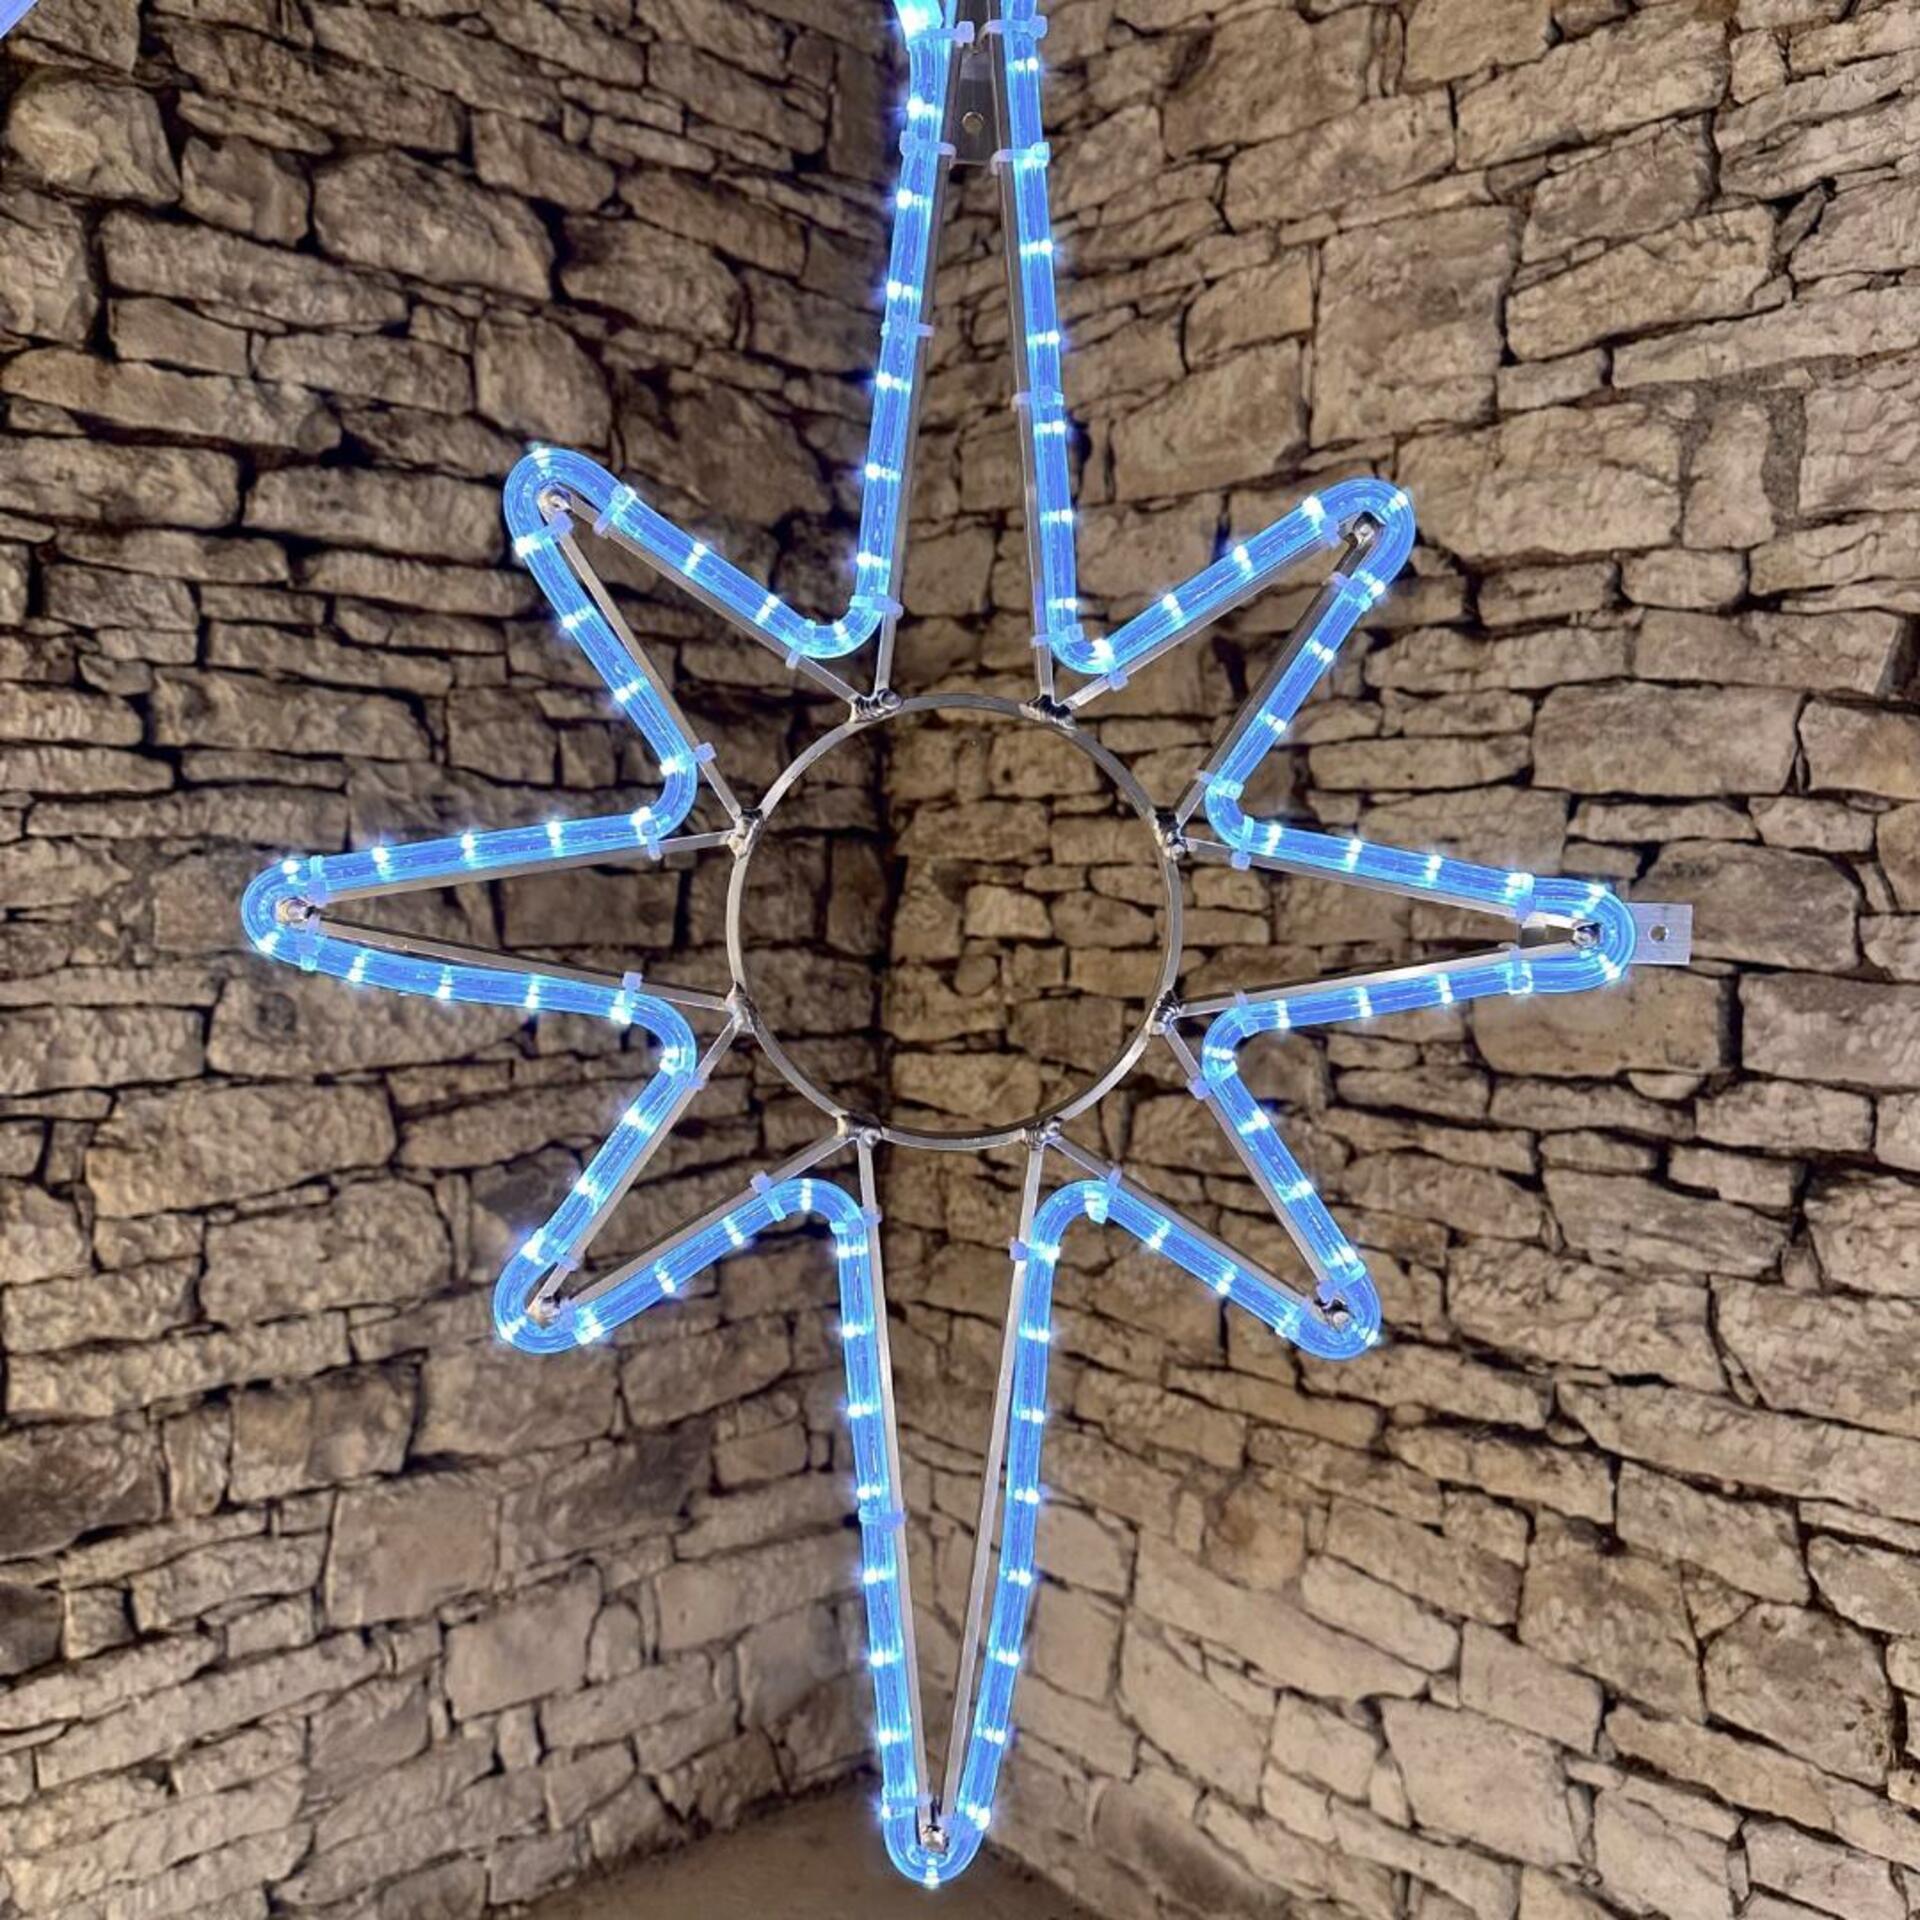 DecoLED LED světelná hvězda na VO, 45x70 cm, ledově bílá